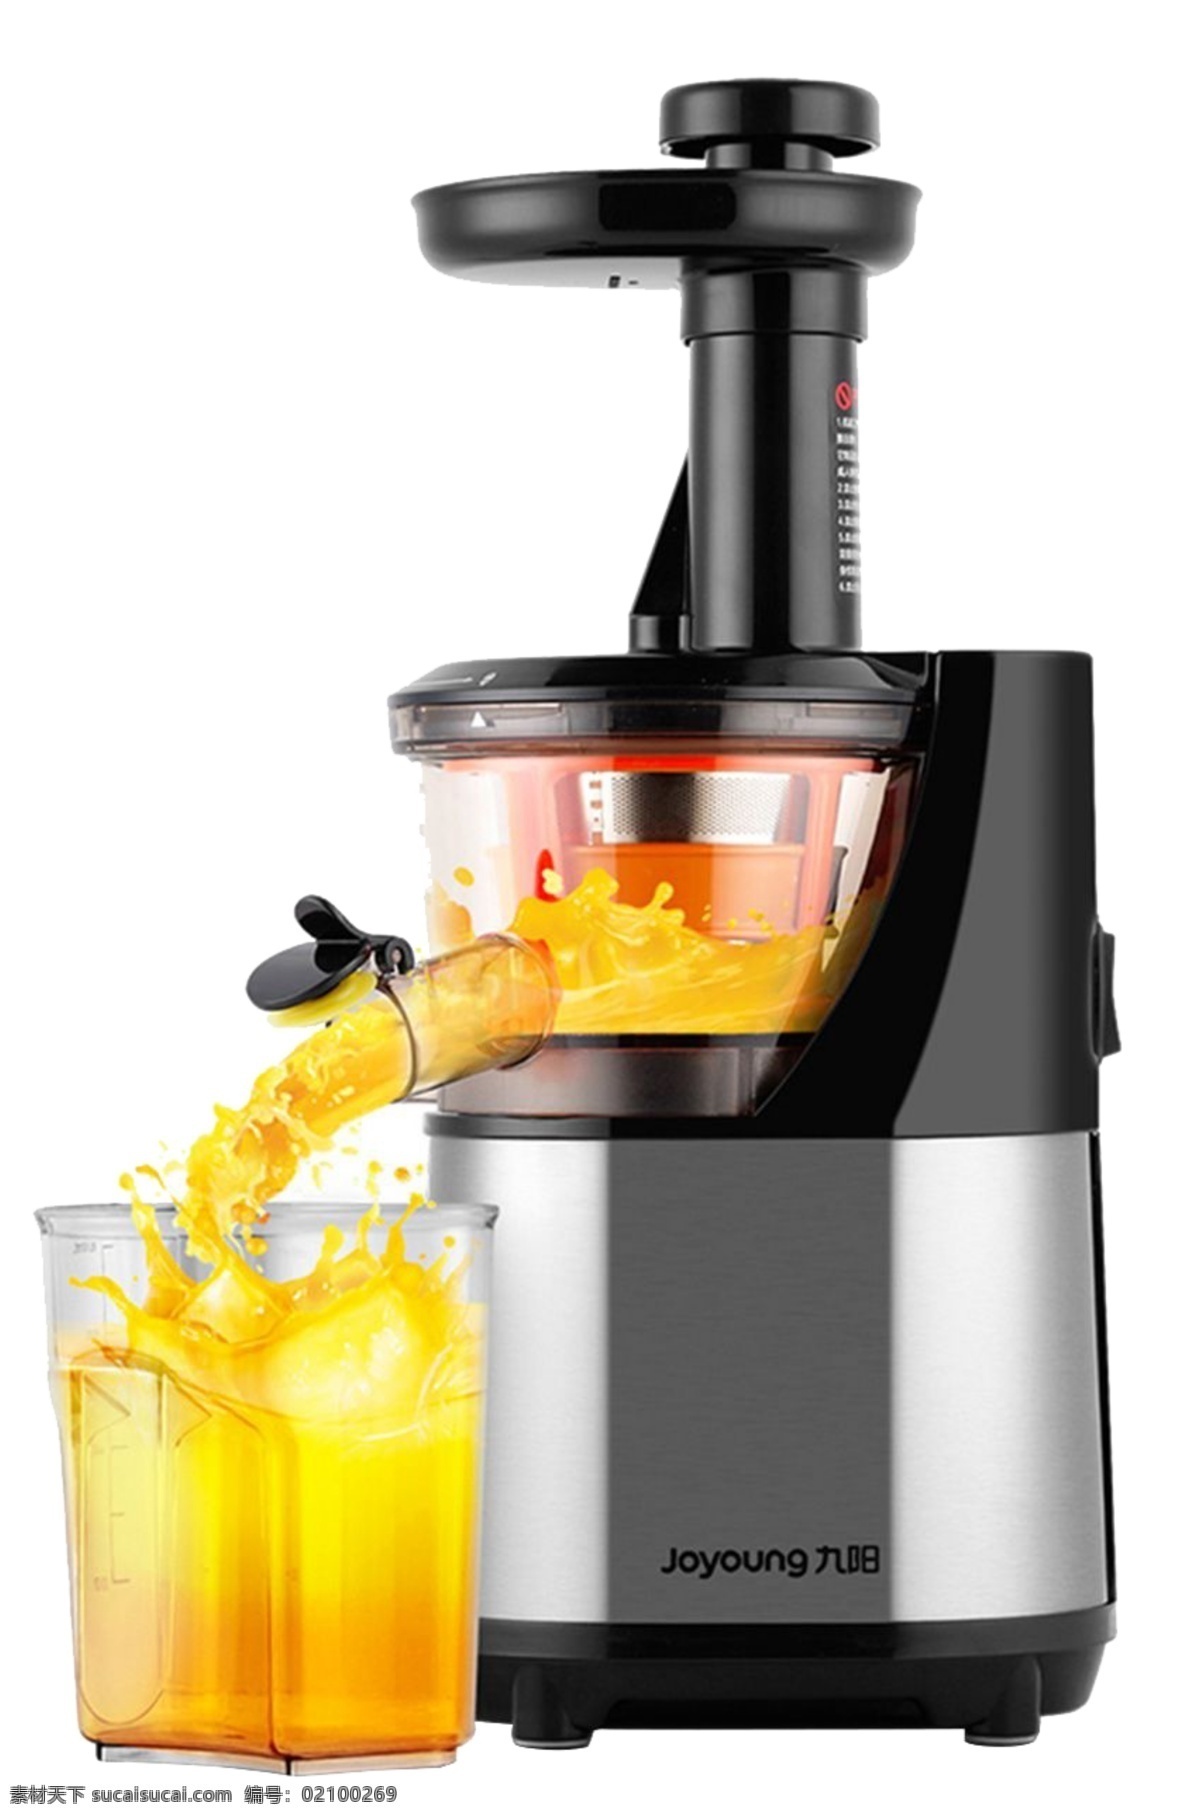 榨汁机素材 榨汁机 果汁 橙汁 机器 家电素材